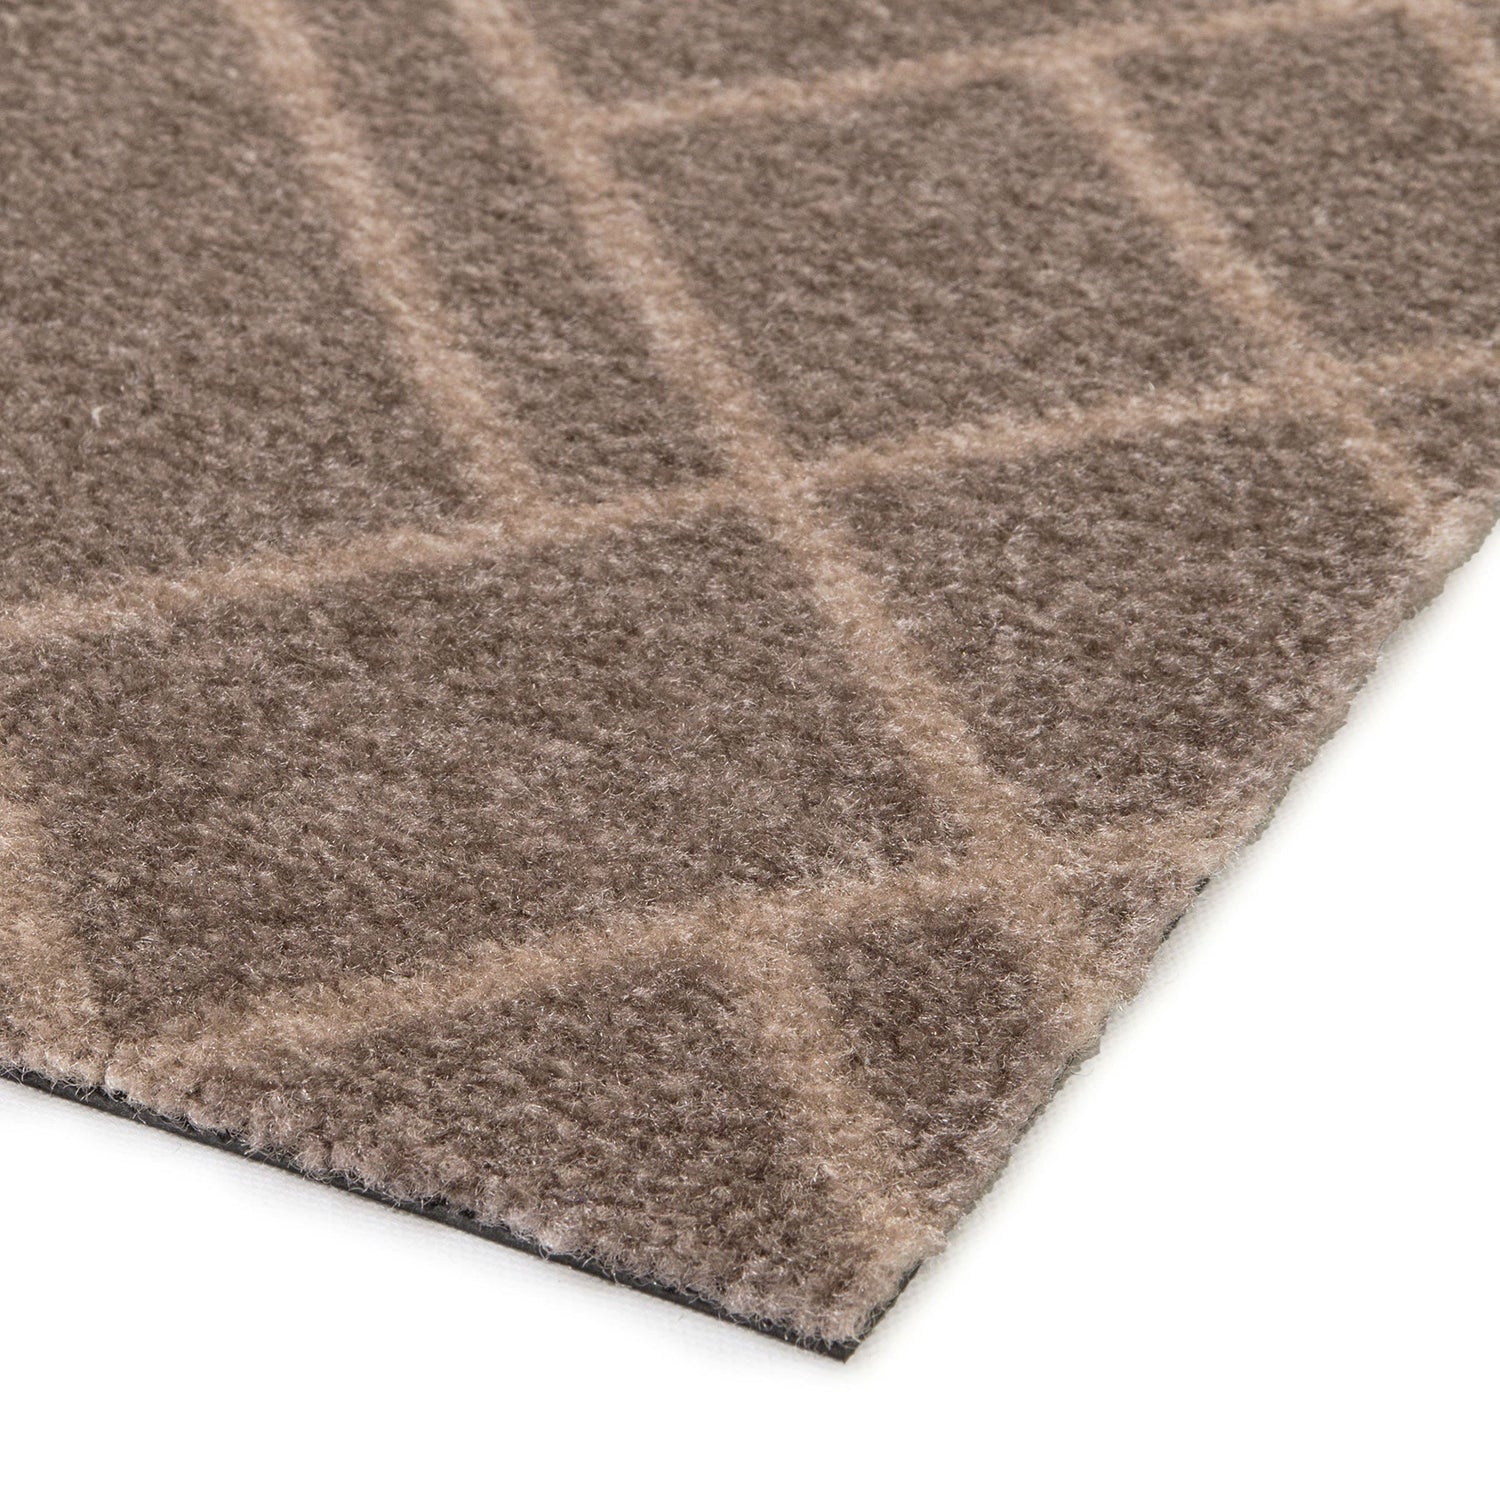 Floor mat 67 x 120 cm - lines/sand